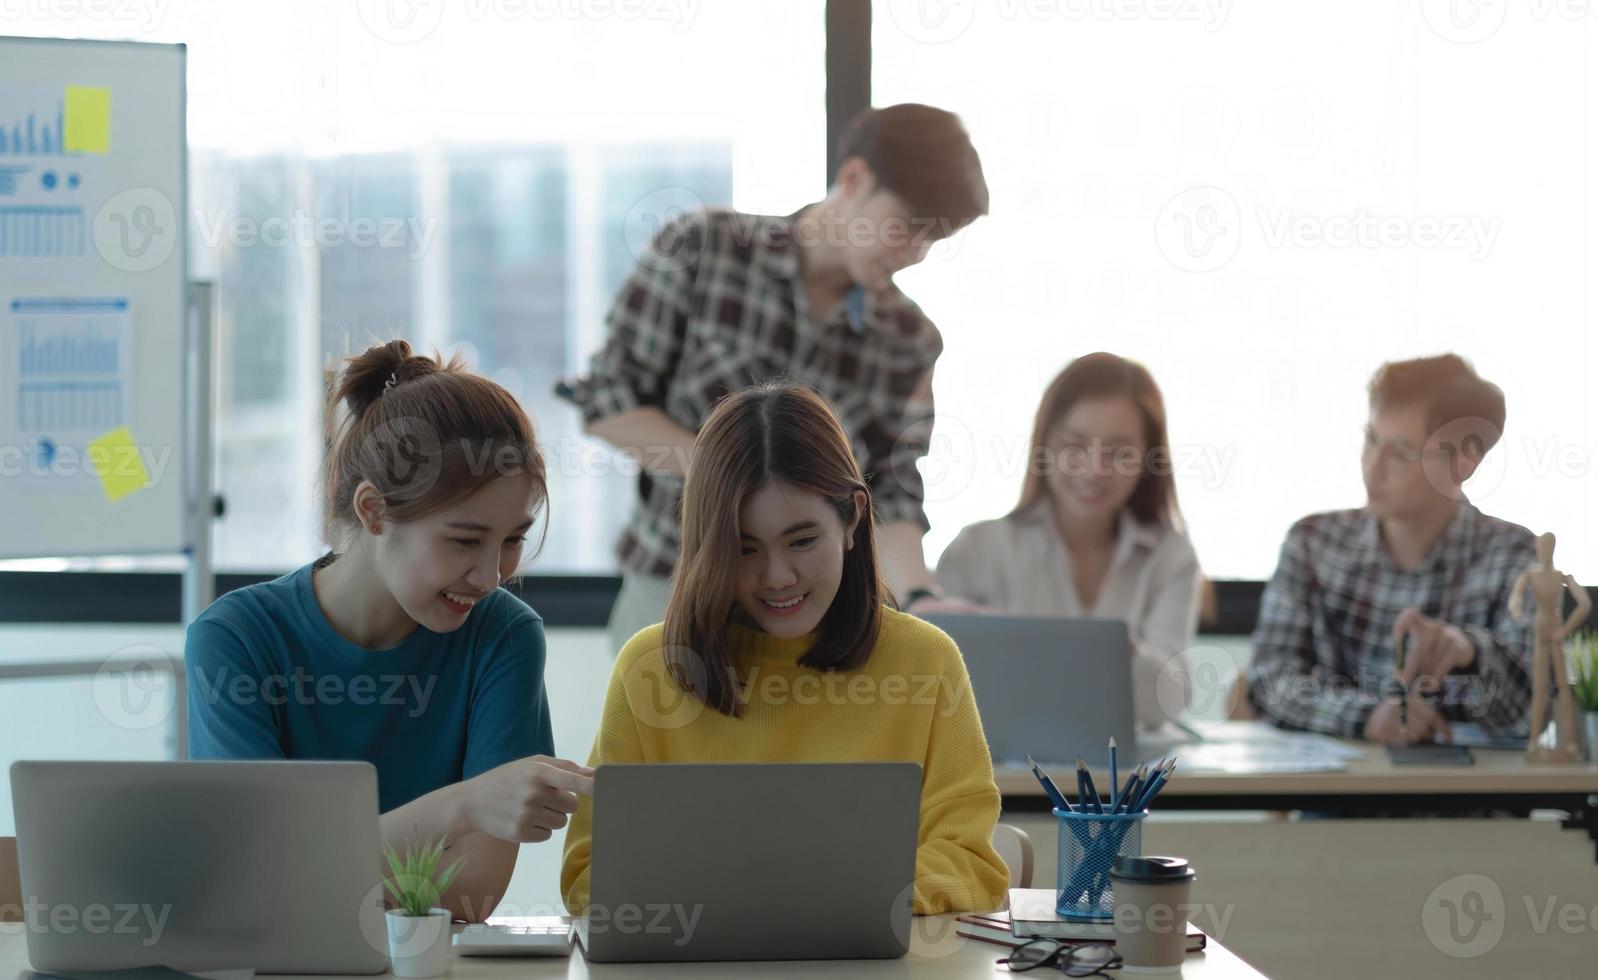 grande gruppo di uomini d'affari che analizzano insieme i rapporti di marketing sui computer. spazio di lavoro in ufficio condiviso affollato. foto